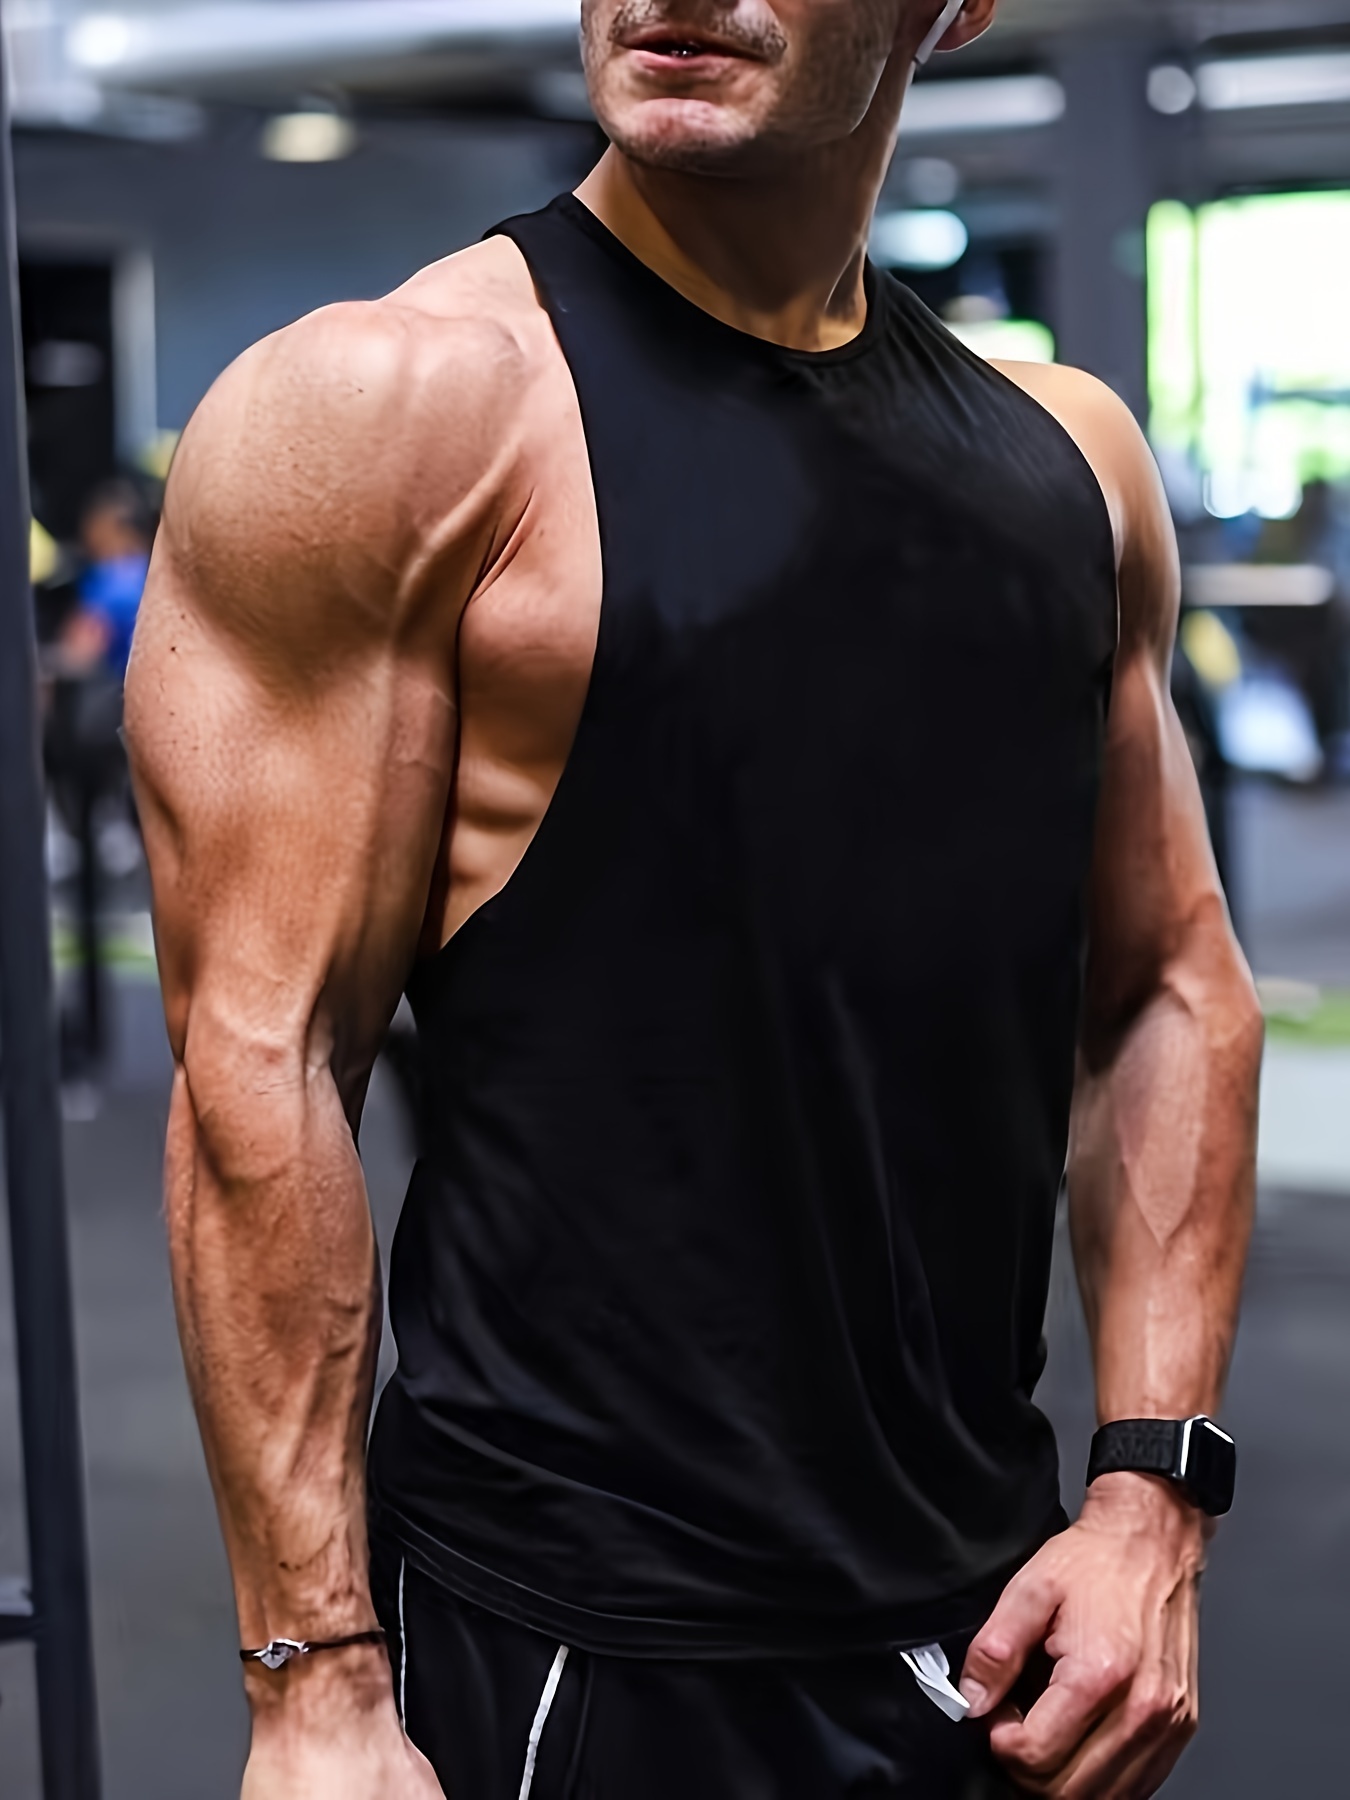 Camisetas deportivas sin mangas para hombre, de secado rápido, con espalda  en Y, culturismo, muscular, para gimnasio (paquete de 1 o 3)